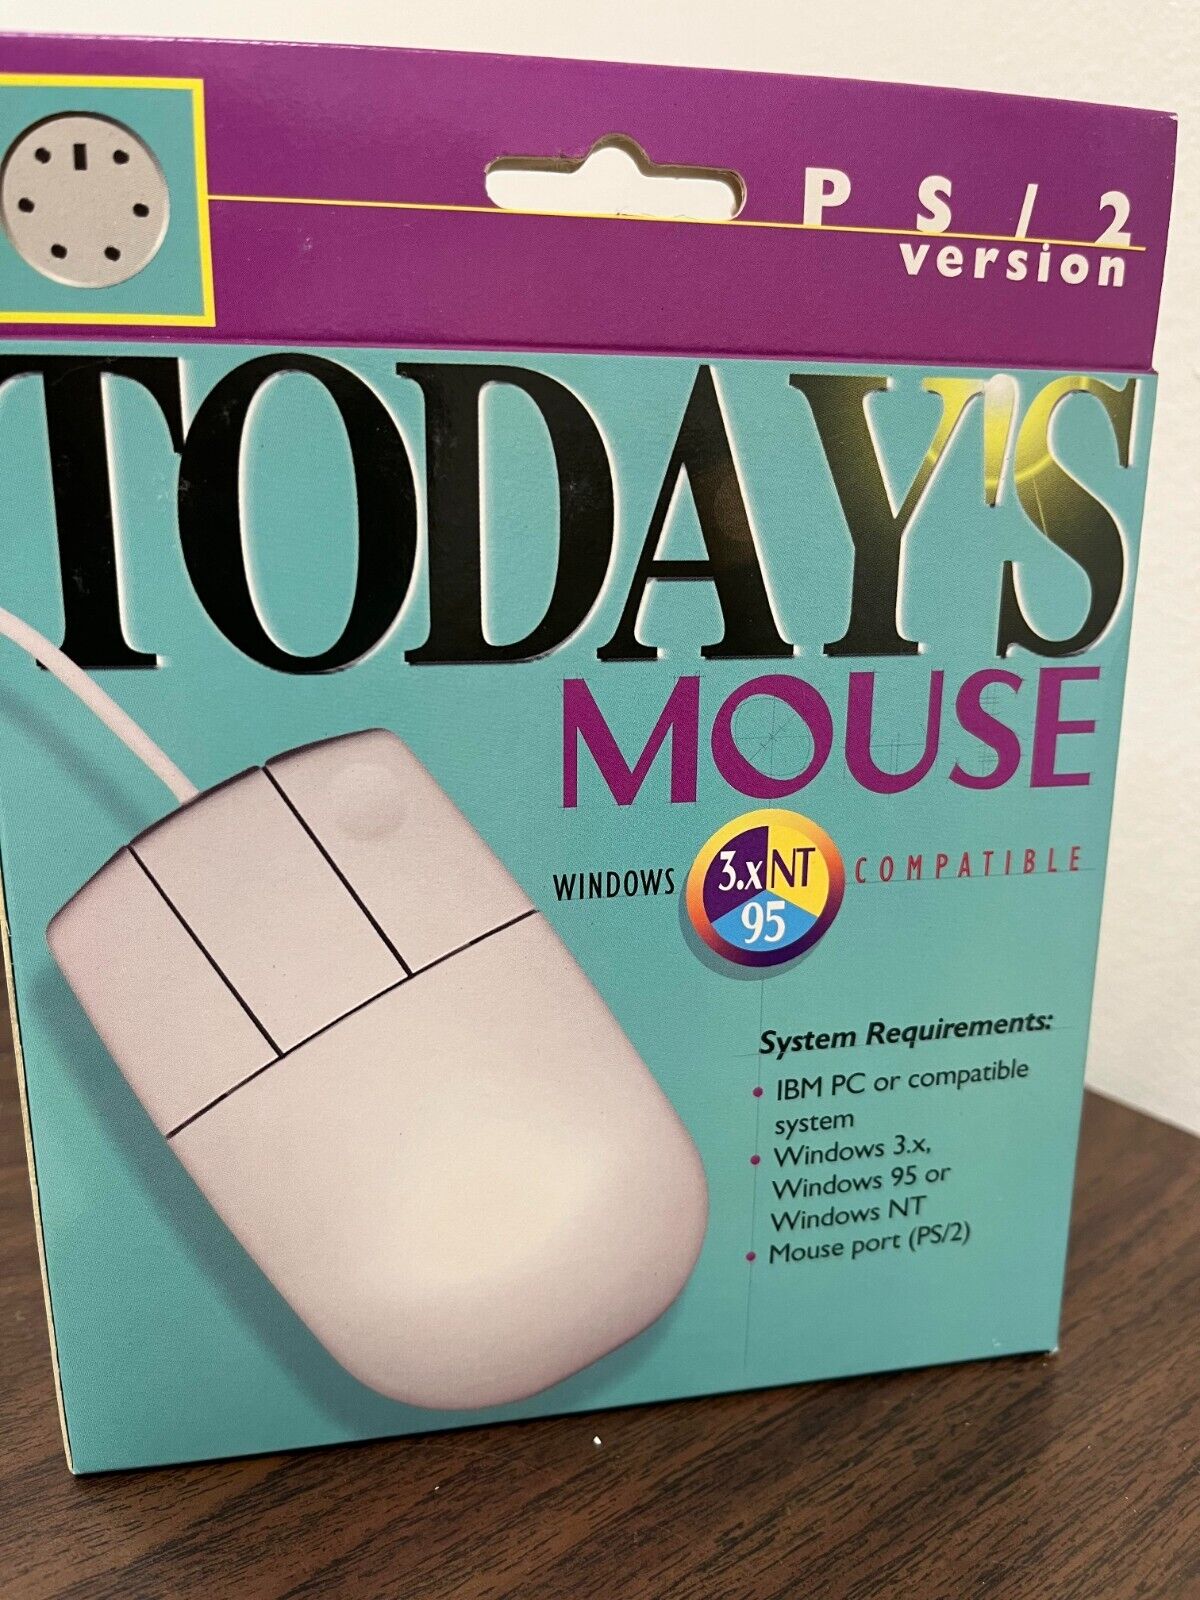 Vintage Computer Mouse - Todays Mouse - Windows 95 P S/2